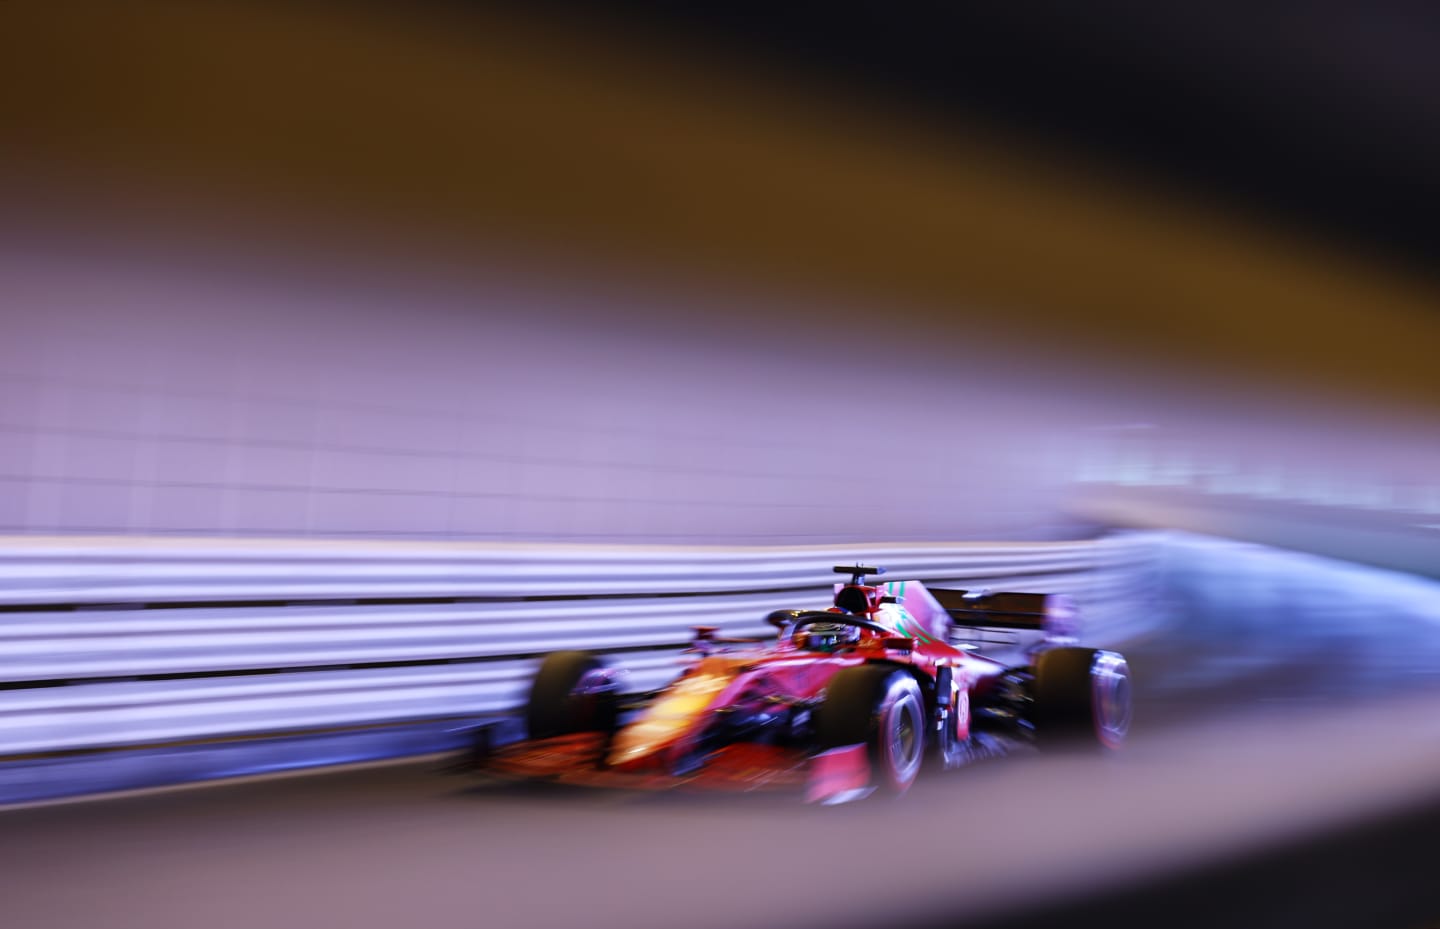 MONTE-CARLO, MONACO - MAY 22: Charles Leclerc of Monaco driving the (16) Scuderia Ferrari SF21 on